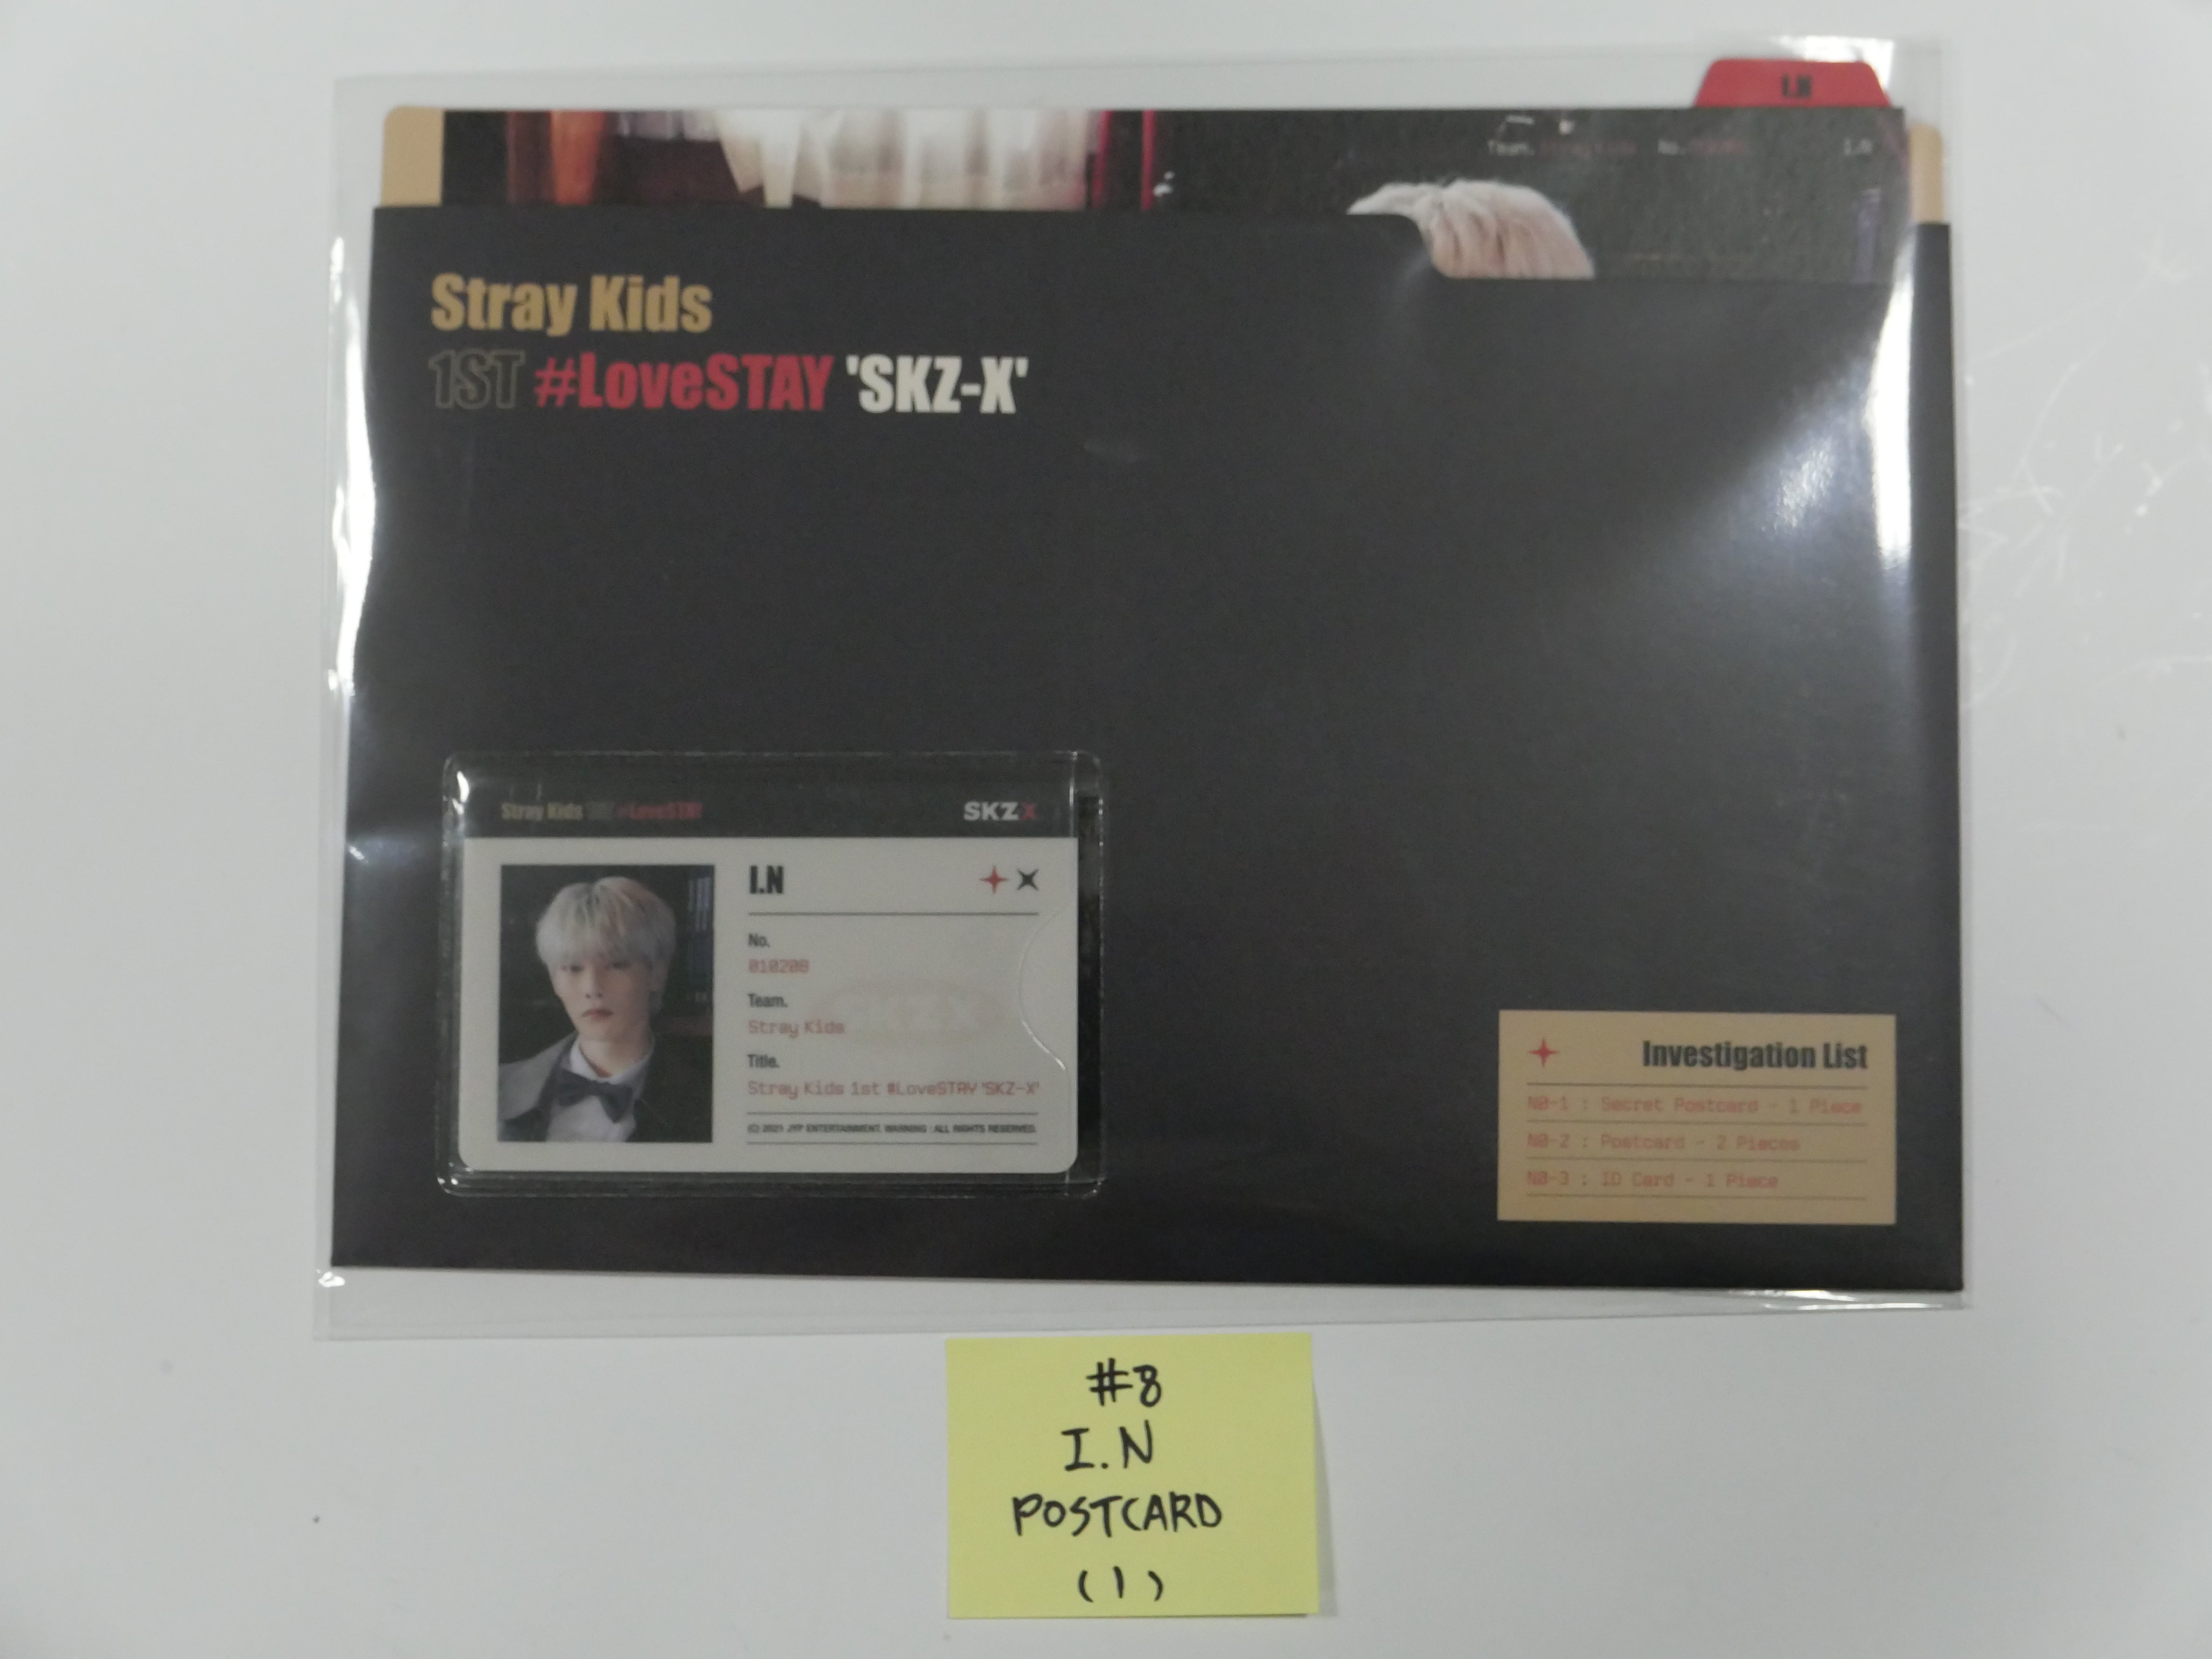 Stray Kids - [1ST#LoveSTAY 'SKZ-X'] - ポストカード & IDカードファイルセット